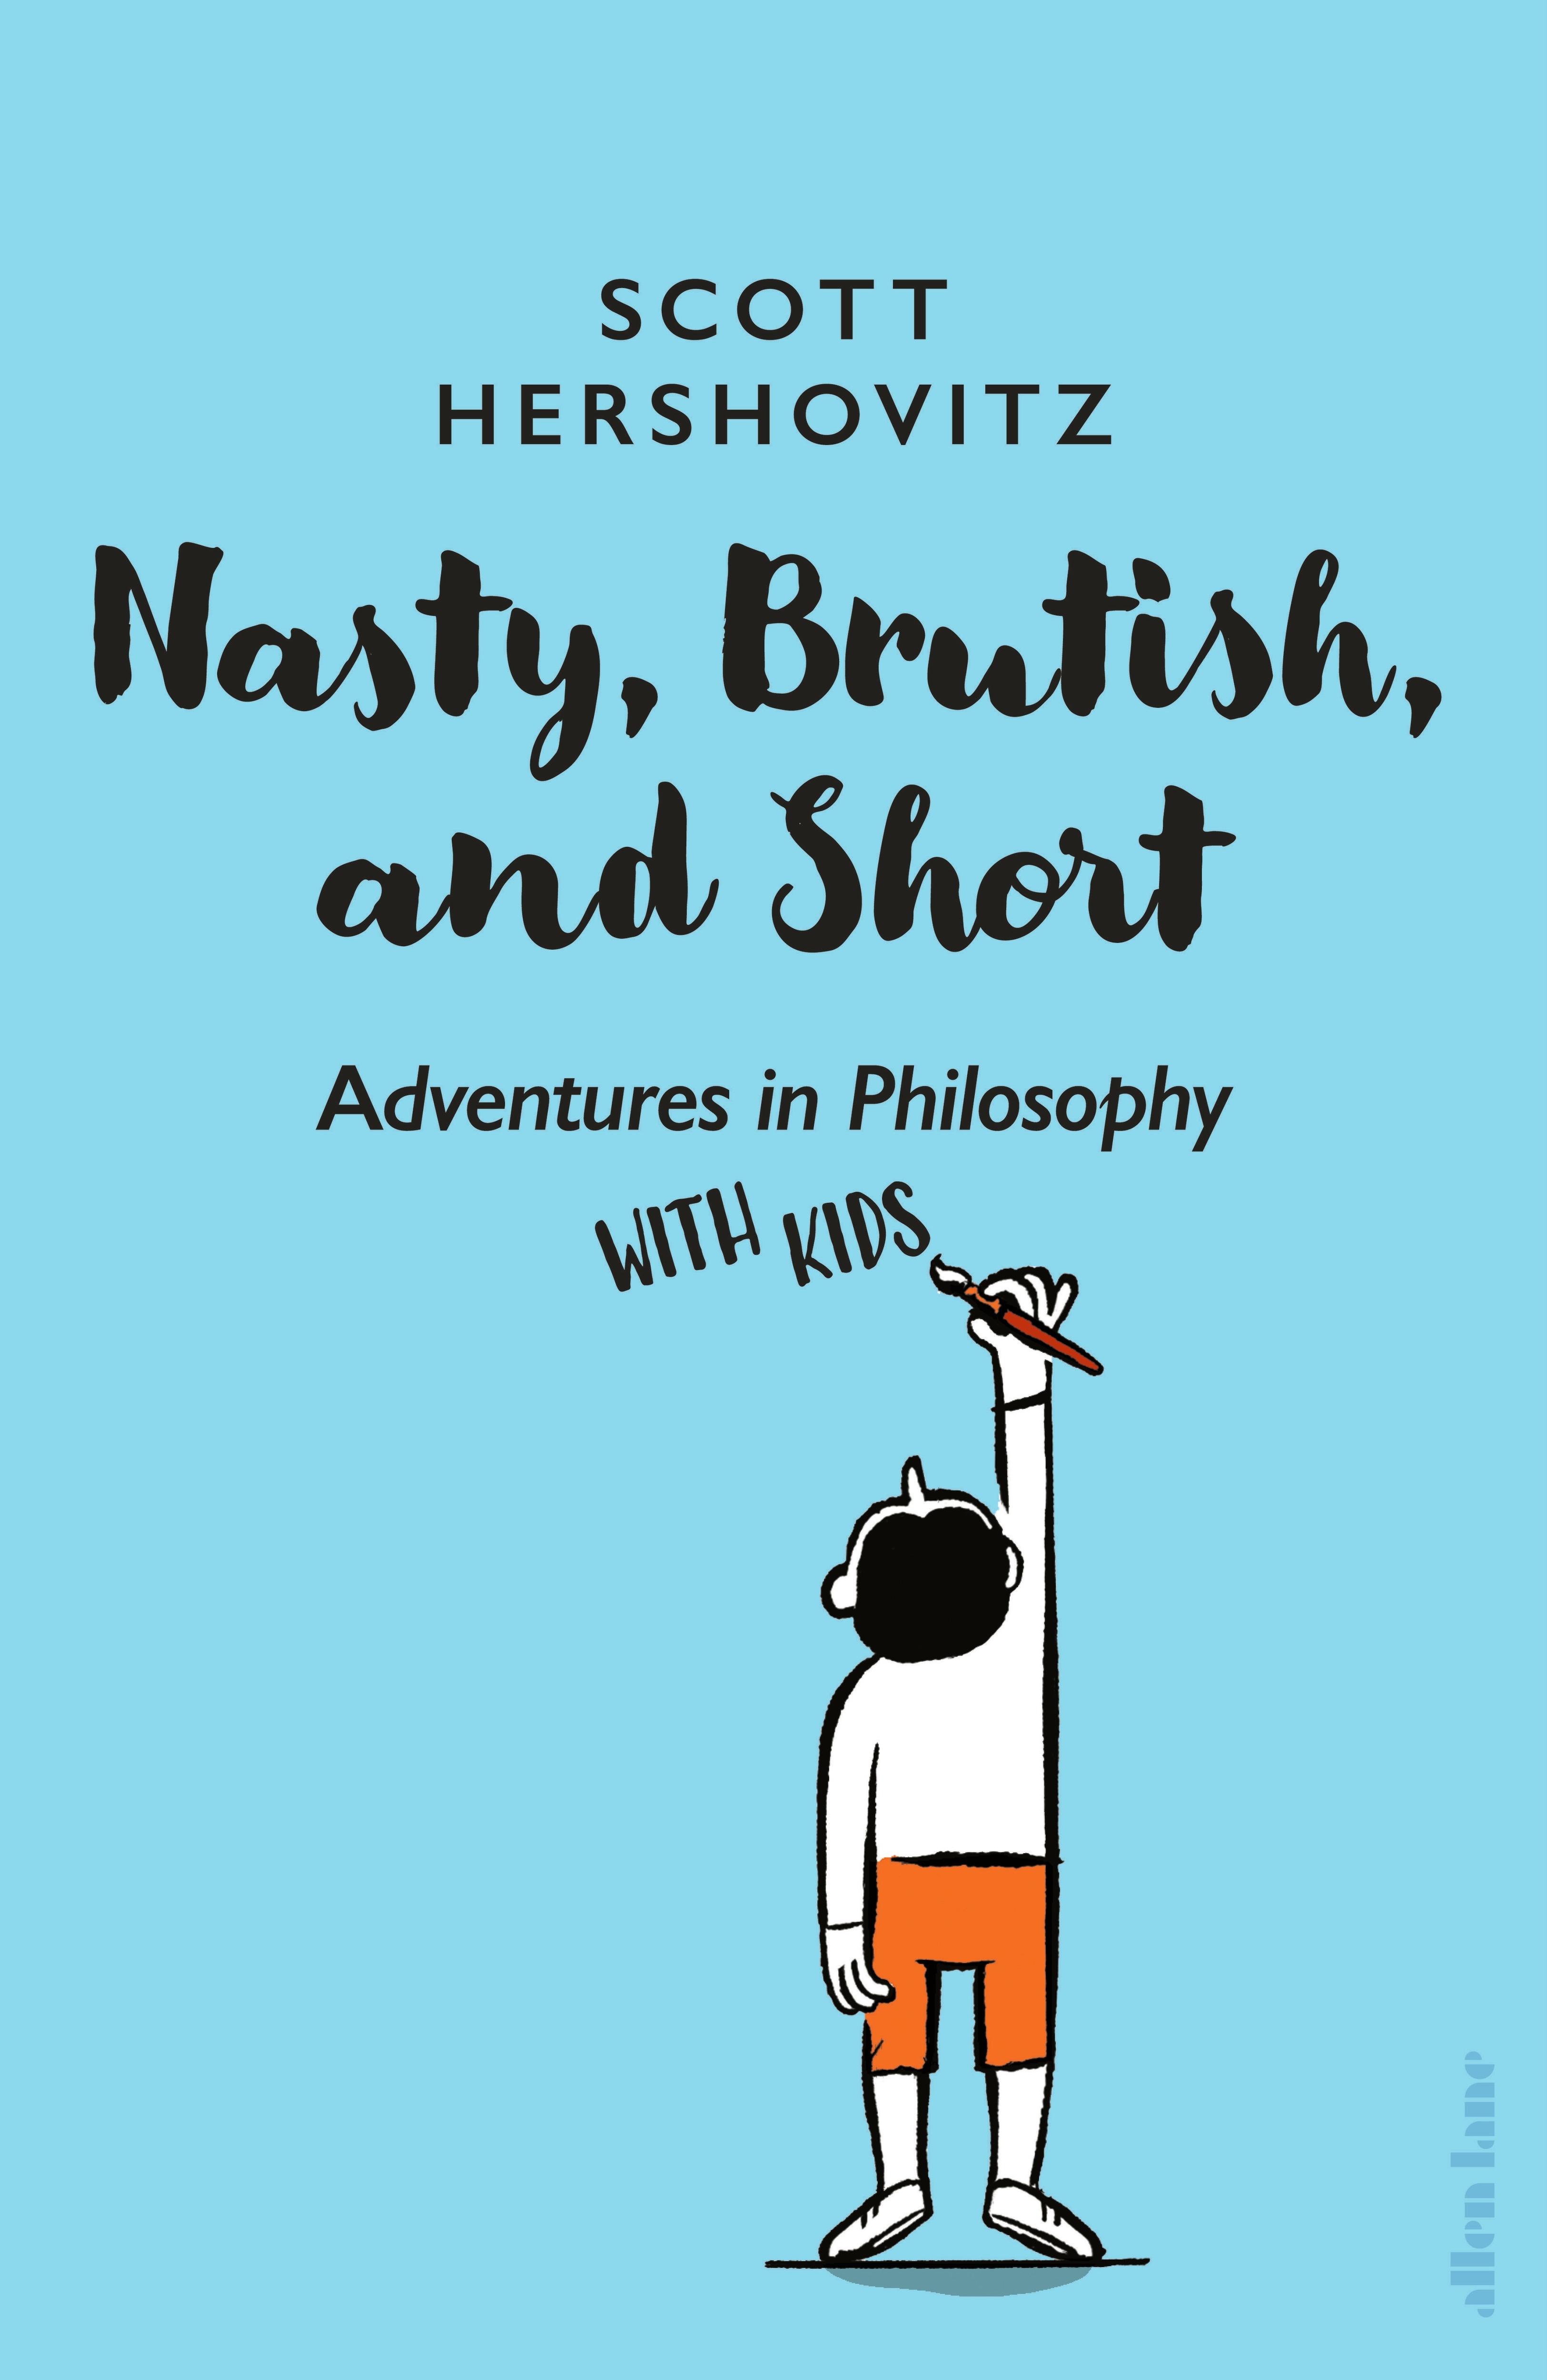 Book “Nasty, Brutish, and Short” by Scott Hershovitz — May 3, 2022